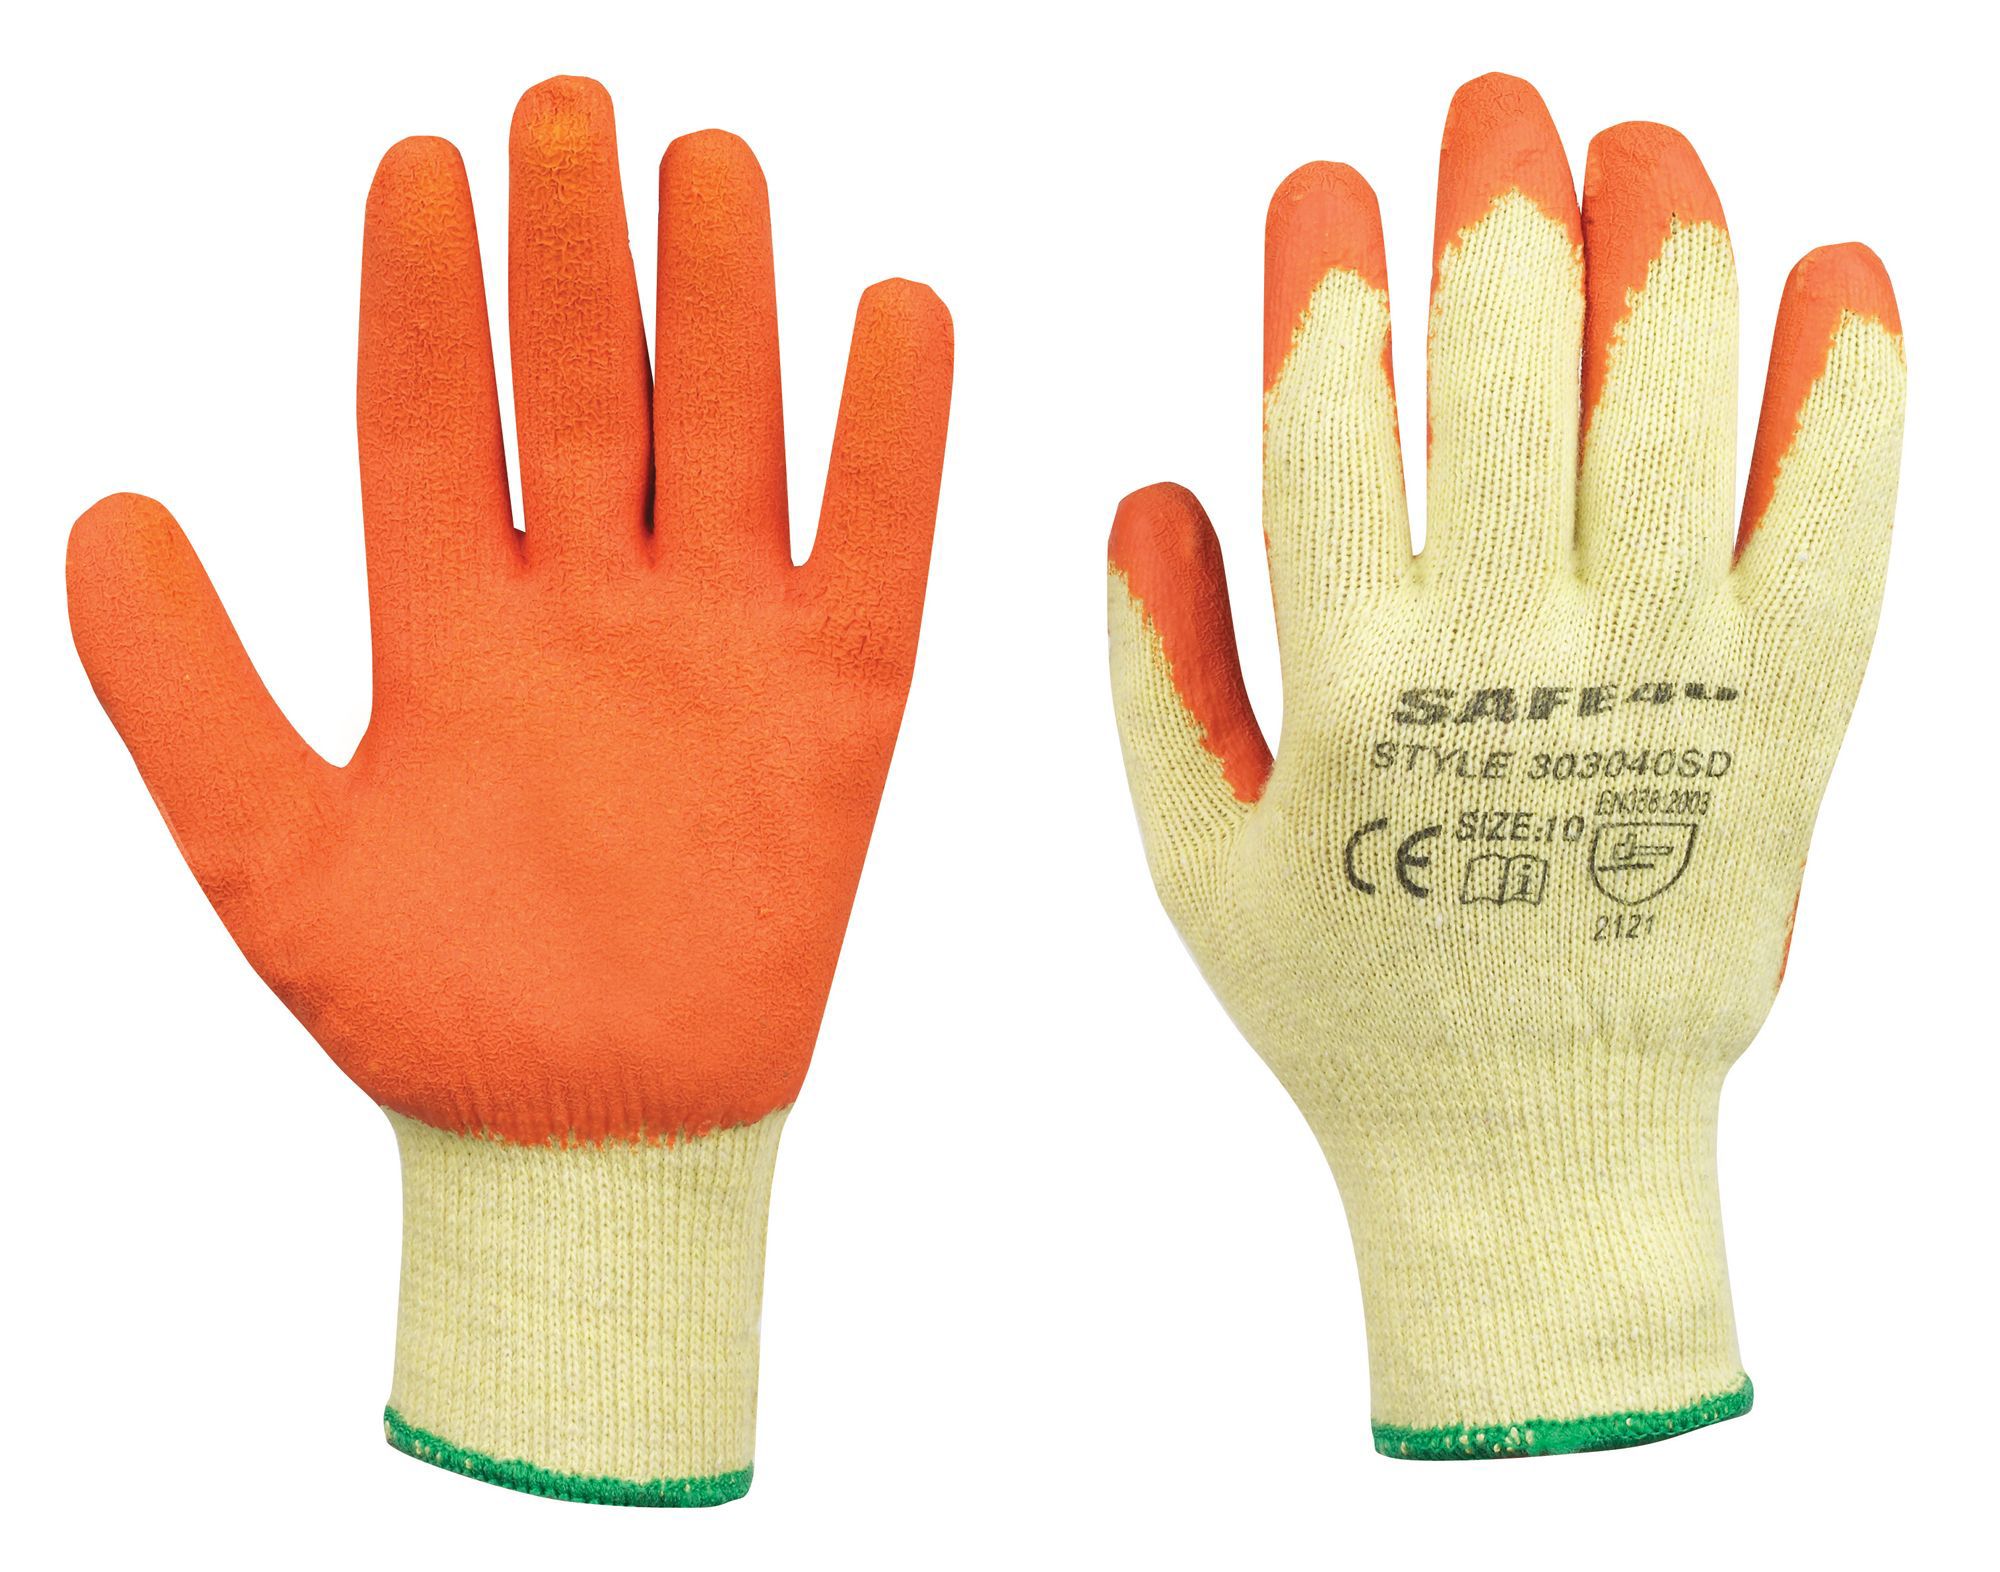 Safe40 Specialist handling gloves